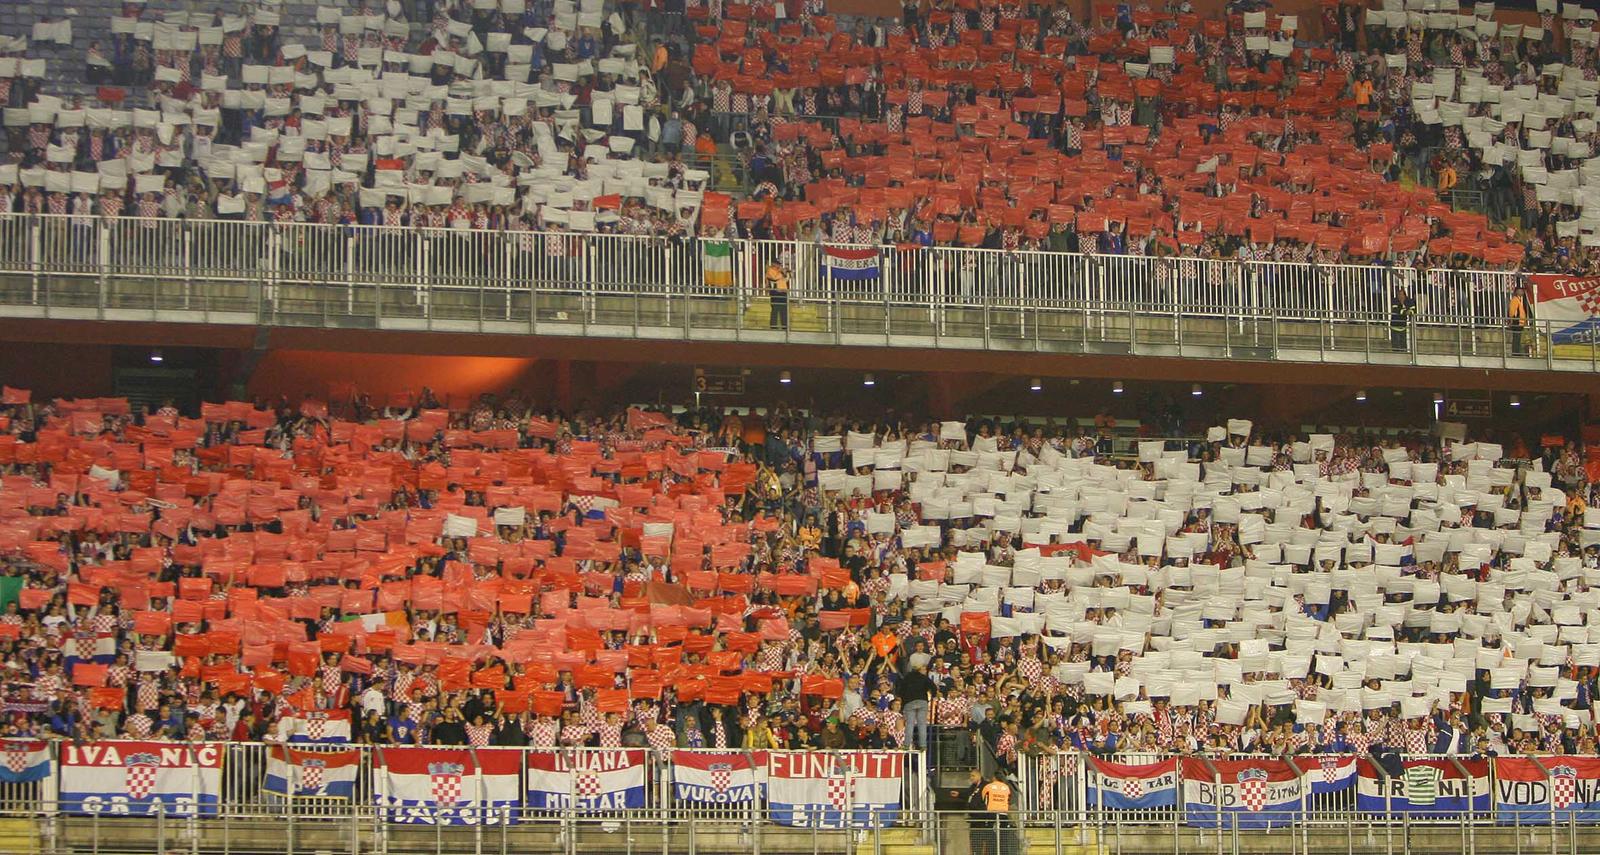 11.10.2006., stadion Maksimir, Zagreb - Kvalifikacijska utakmica za Europsko prvenstvo, Hrvatska - Engleska. Photo: Slavko Midzor/PIXSELL